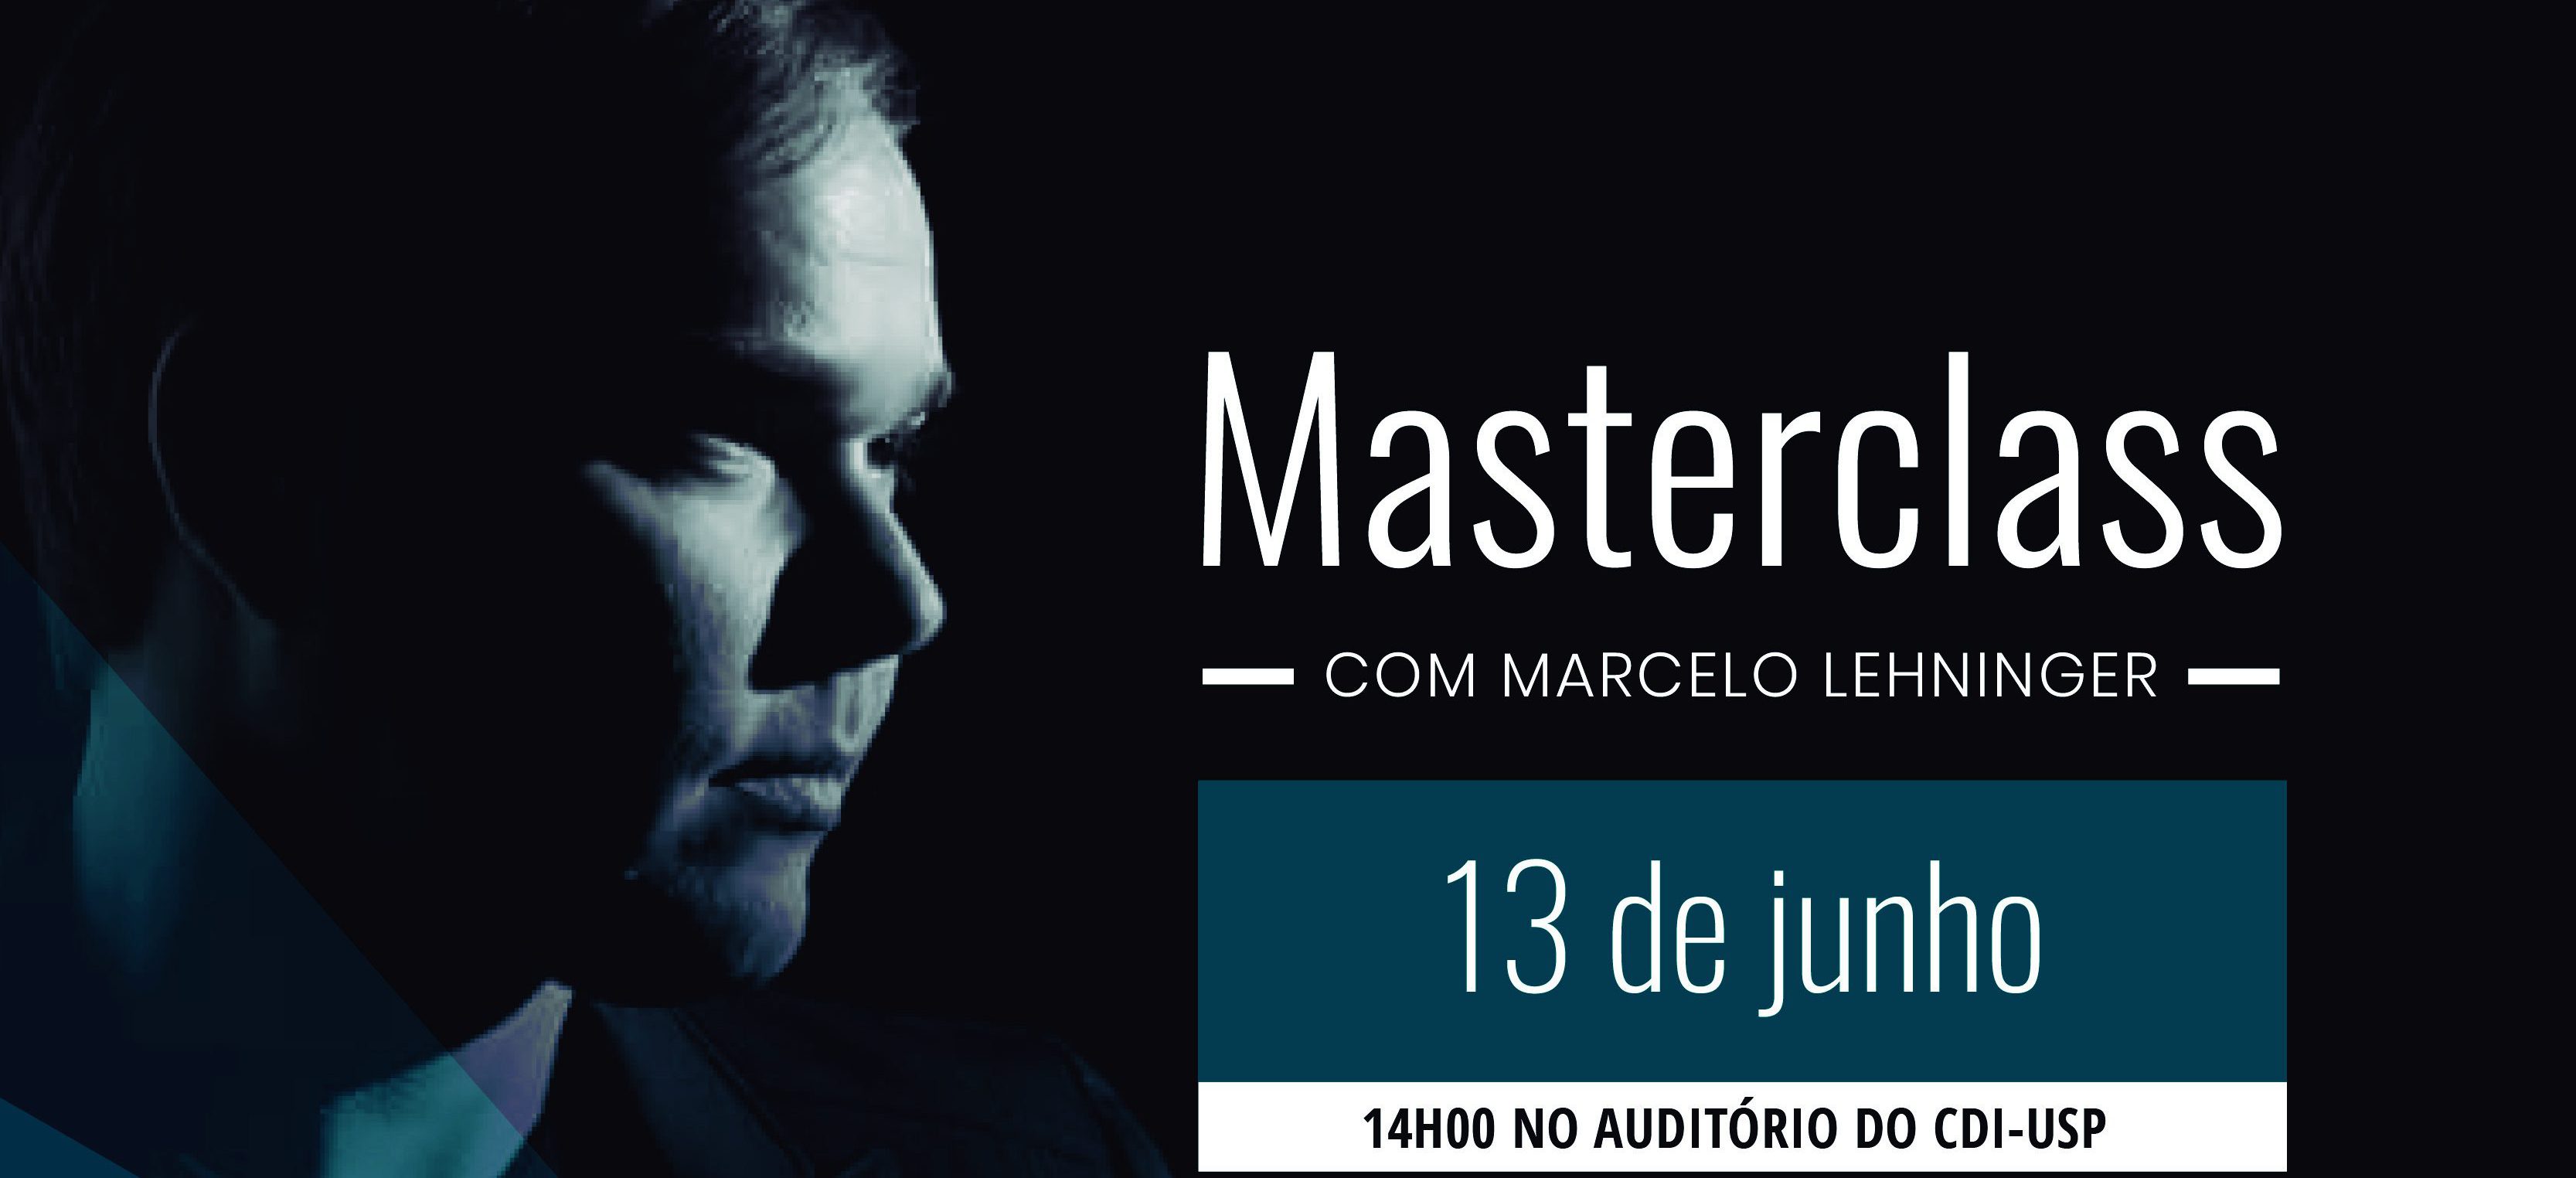 (Português) Masterclass em regência da Osusp traz maestro Marcelo Lehninger para São Paulo